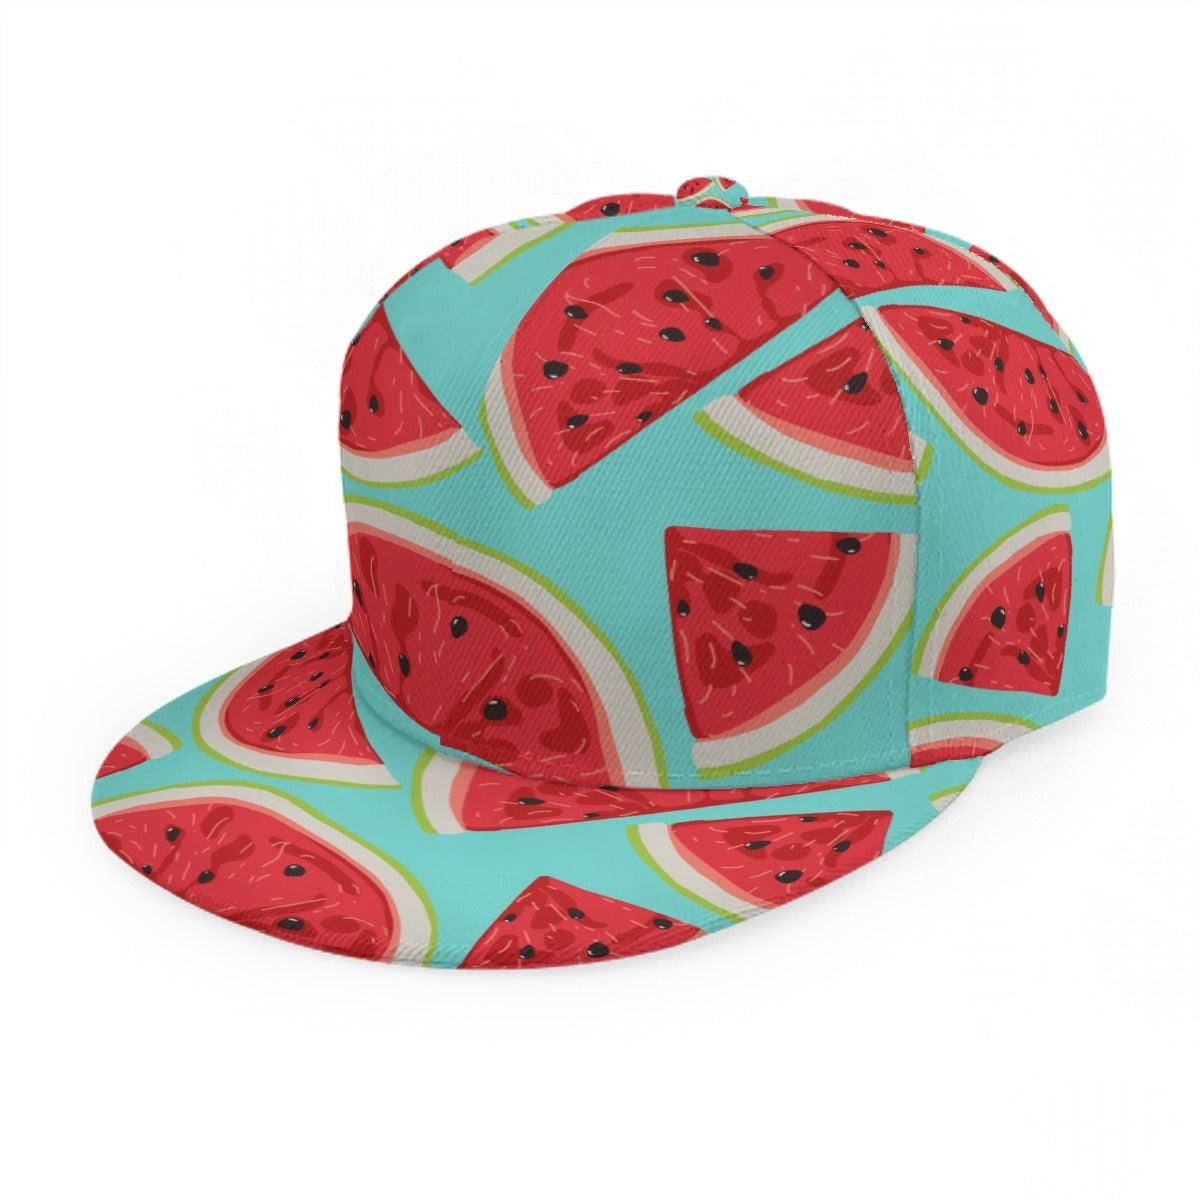 Flat Brim Hat- Watermelon Summer - Premium  from Elementologie - Just $12.99! Shop now at Elementologie